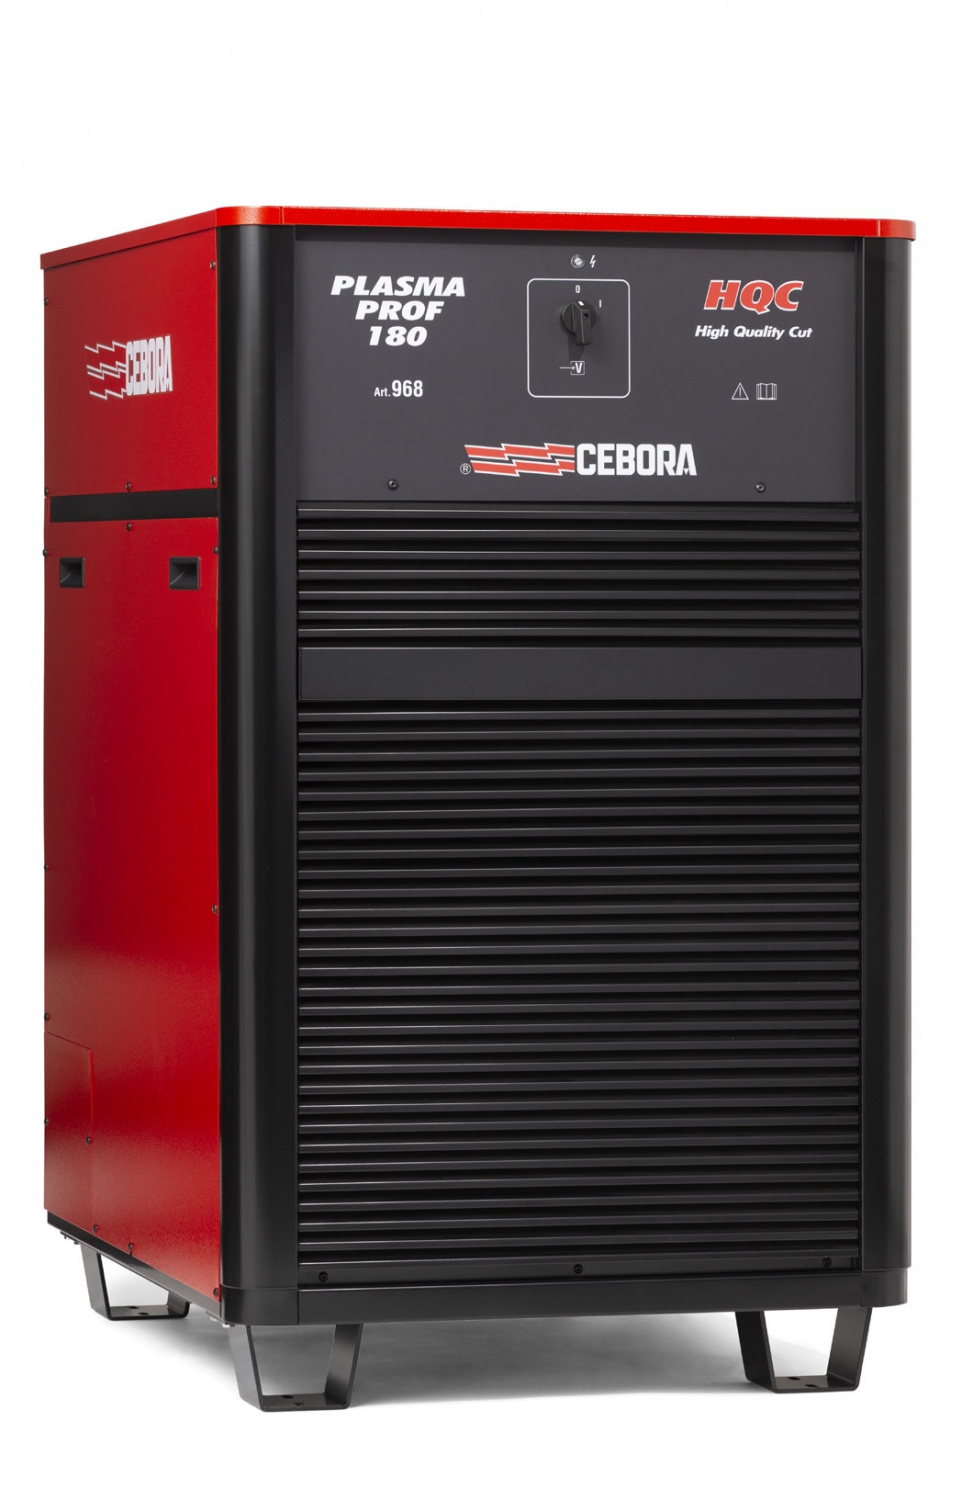 Источник плазменной резки Cebora PLASMA PROF 180 HQC+ полный комплект для ЧПУ с ручной консолью